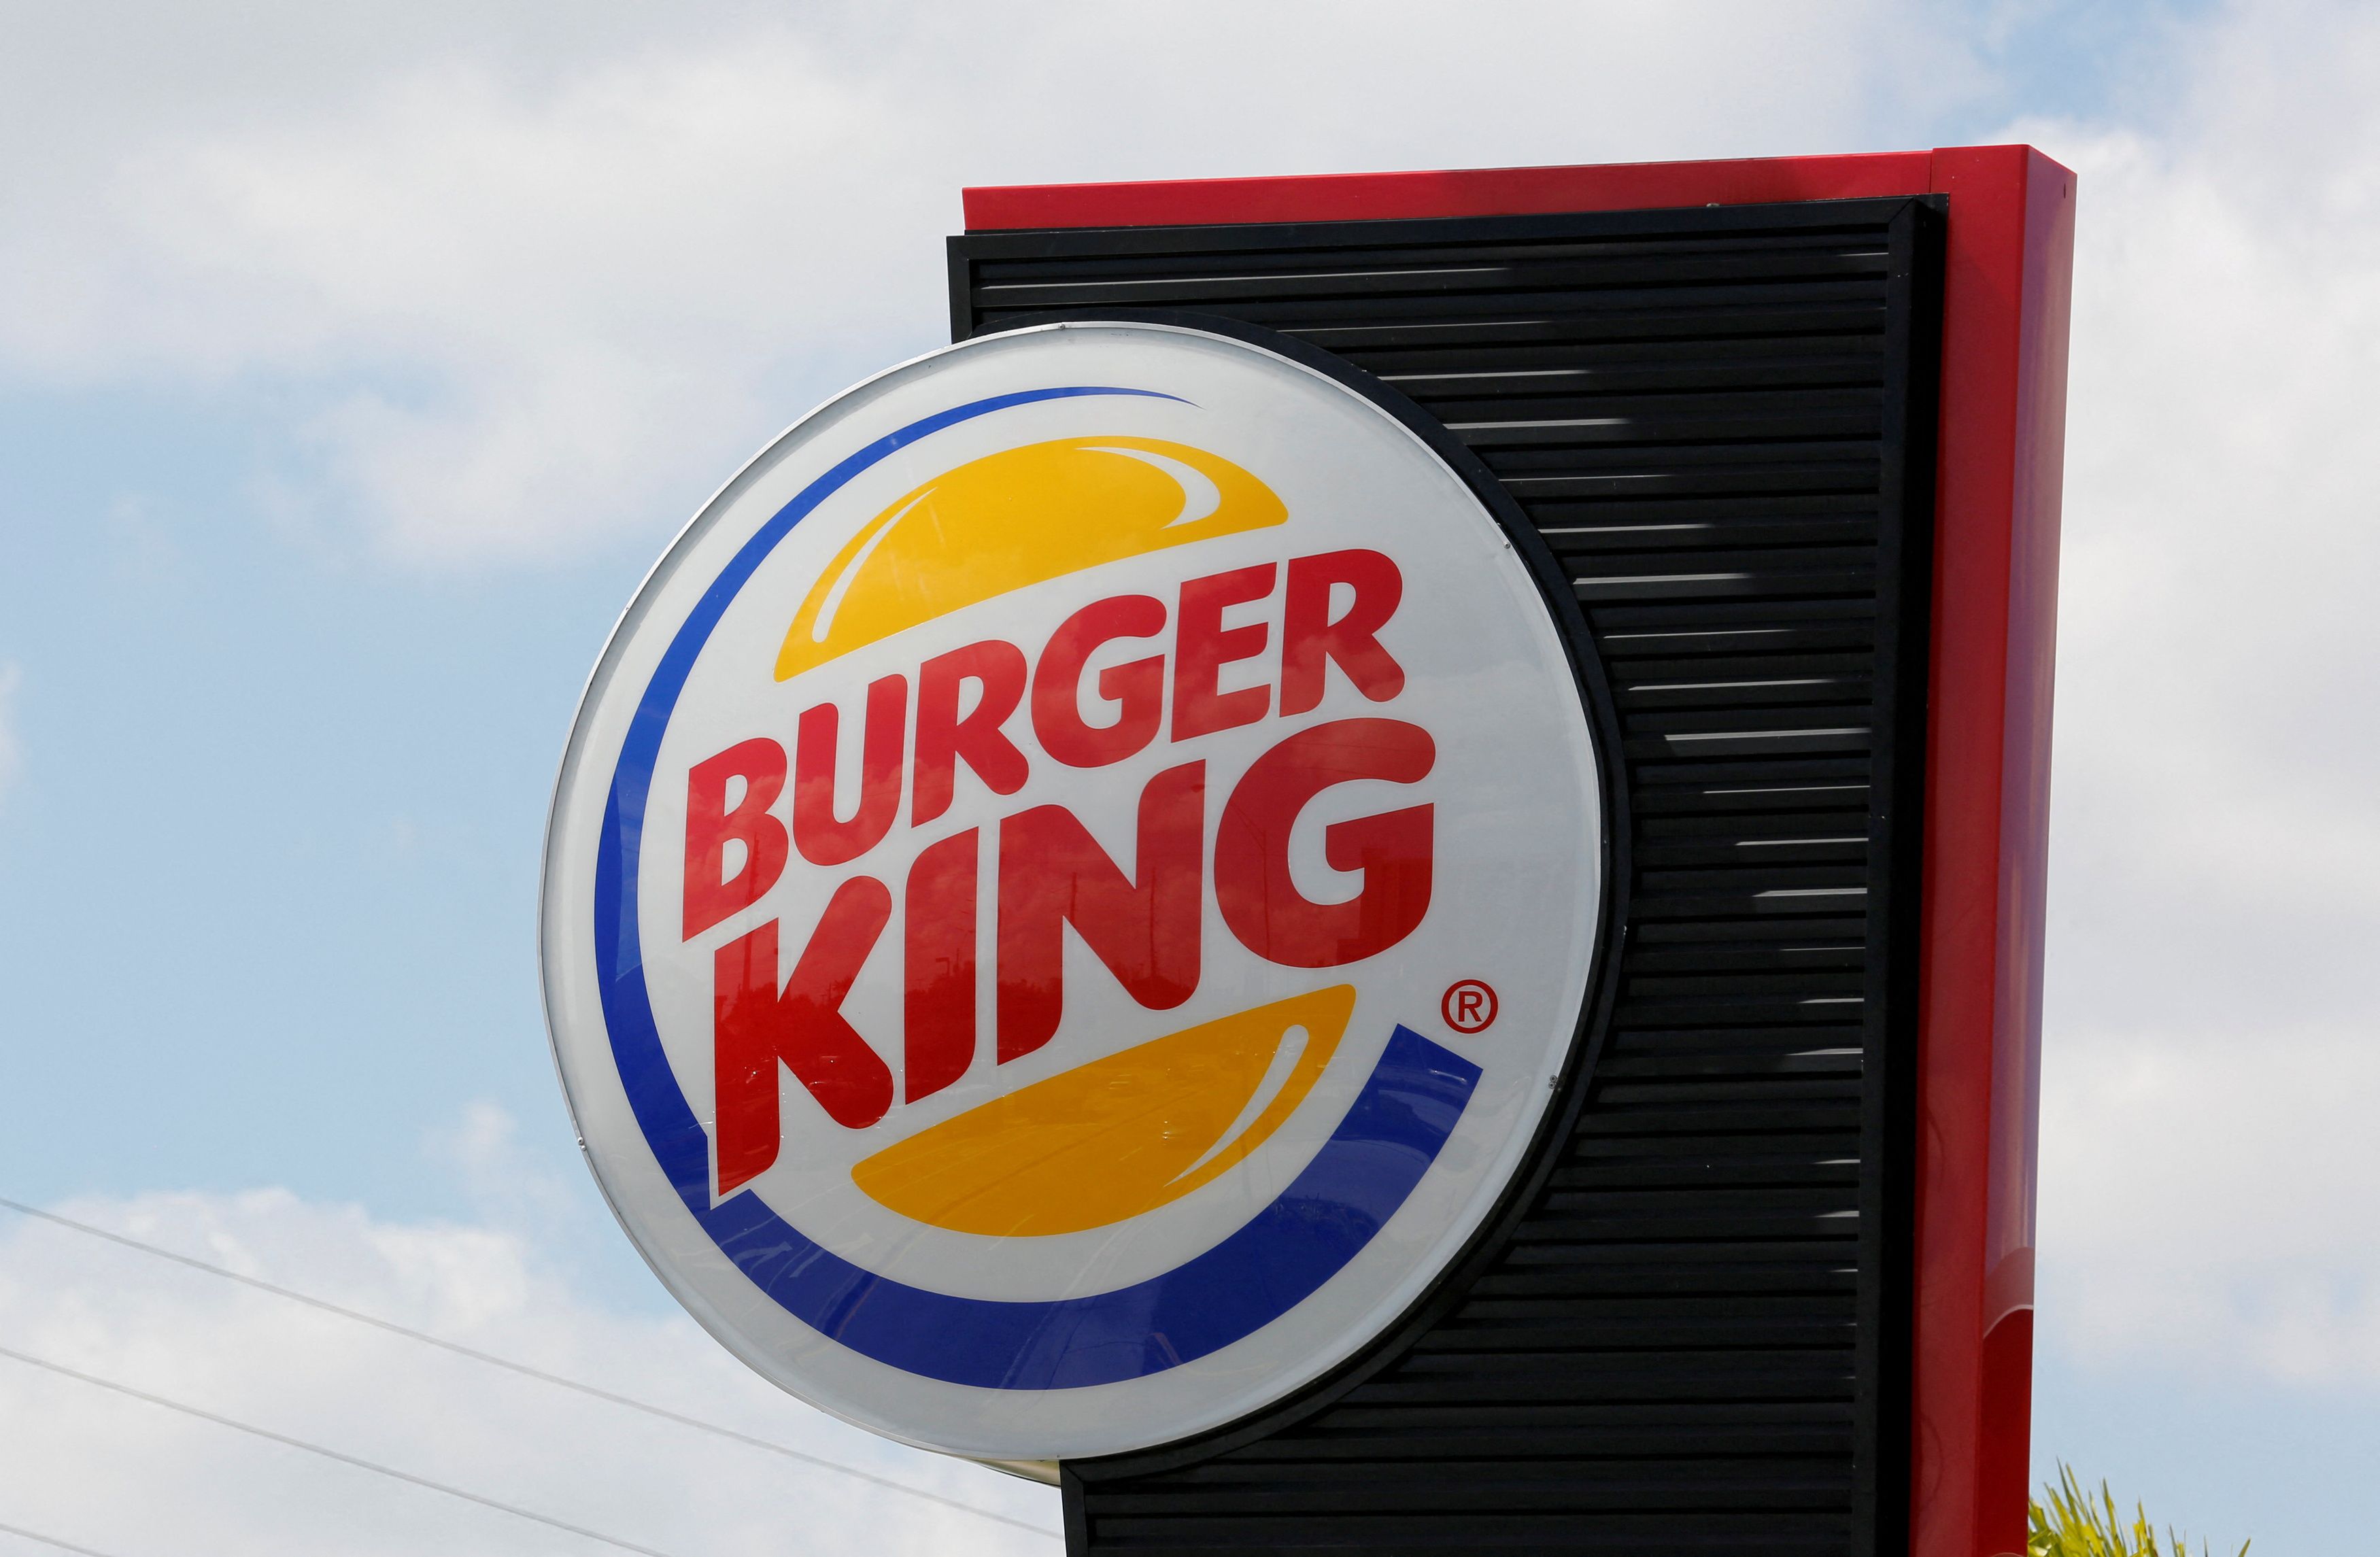  Actualmente, Burger King cuenta con más de 18.000 restaurantes en todo el mundo. (REUTERS/Joe Skipper//File Photo)